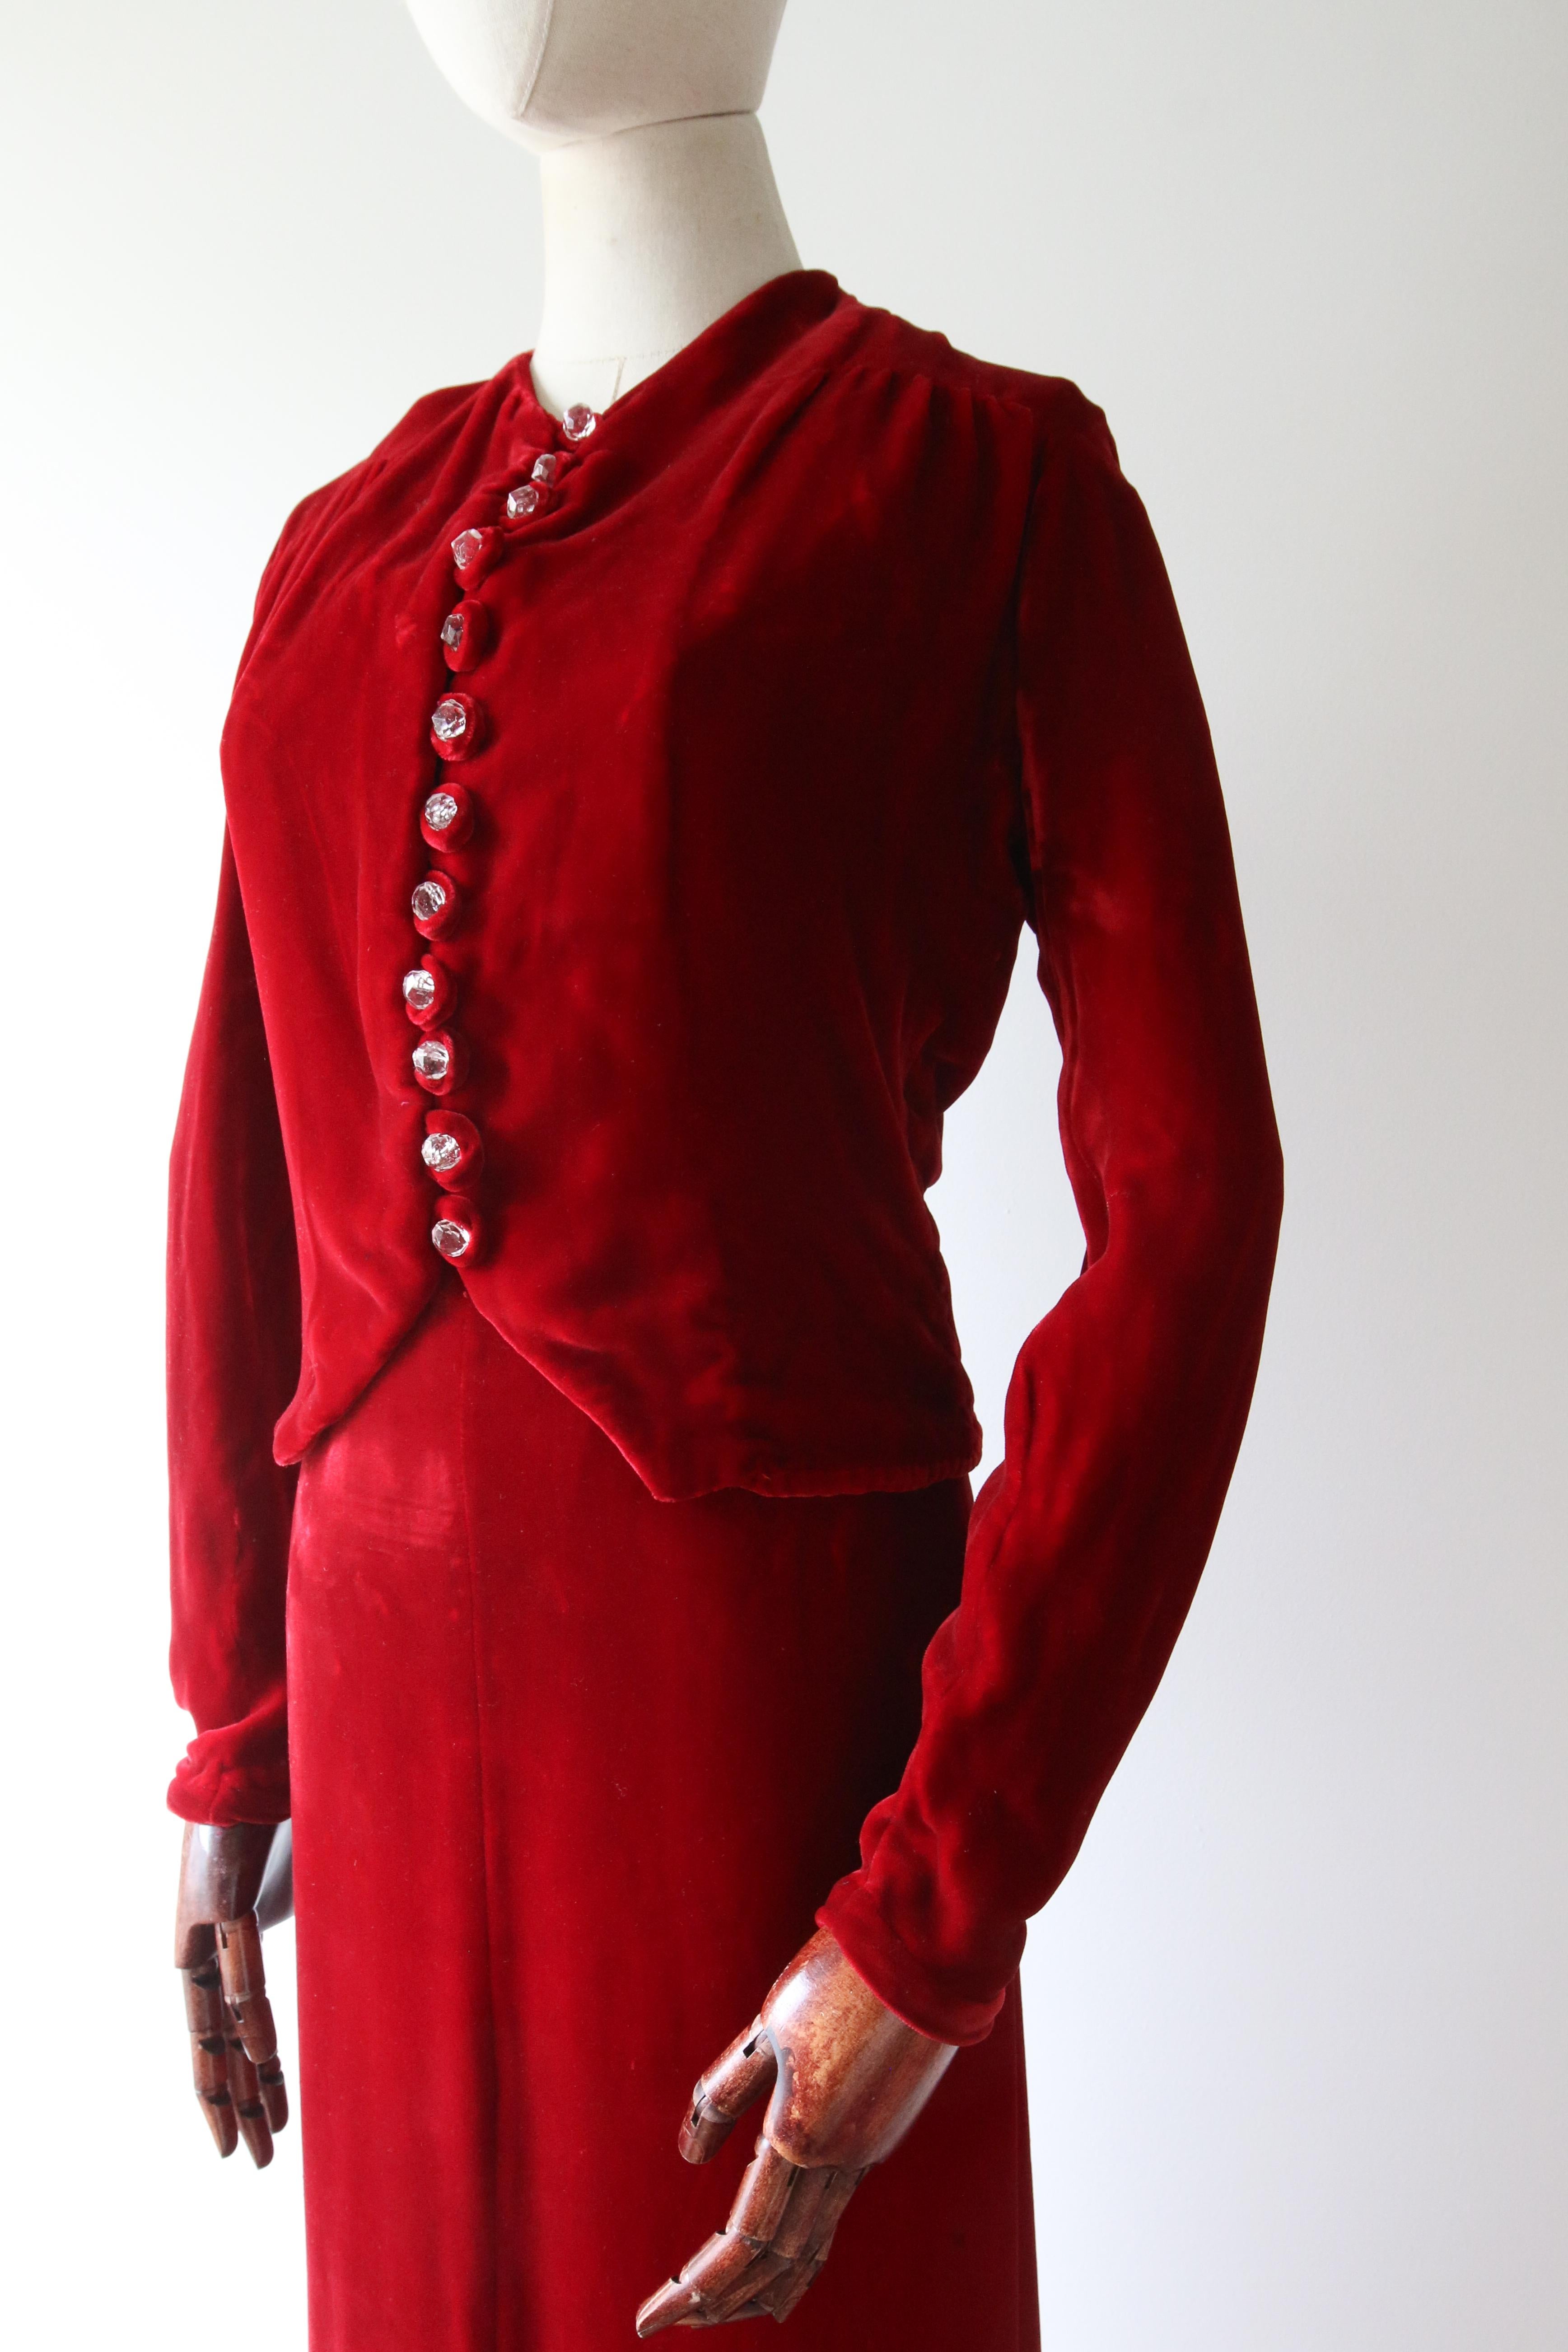 Vintage 1930's red velvet dress and jacket 1930's bias cut UK 6- 8 US 2-4 For Sale 10